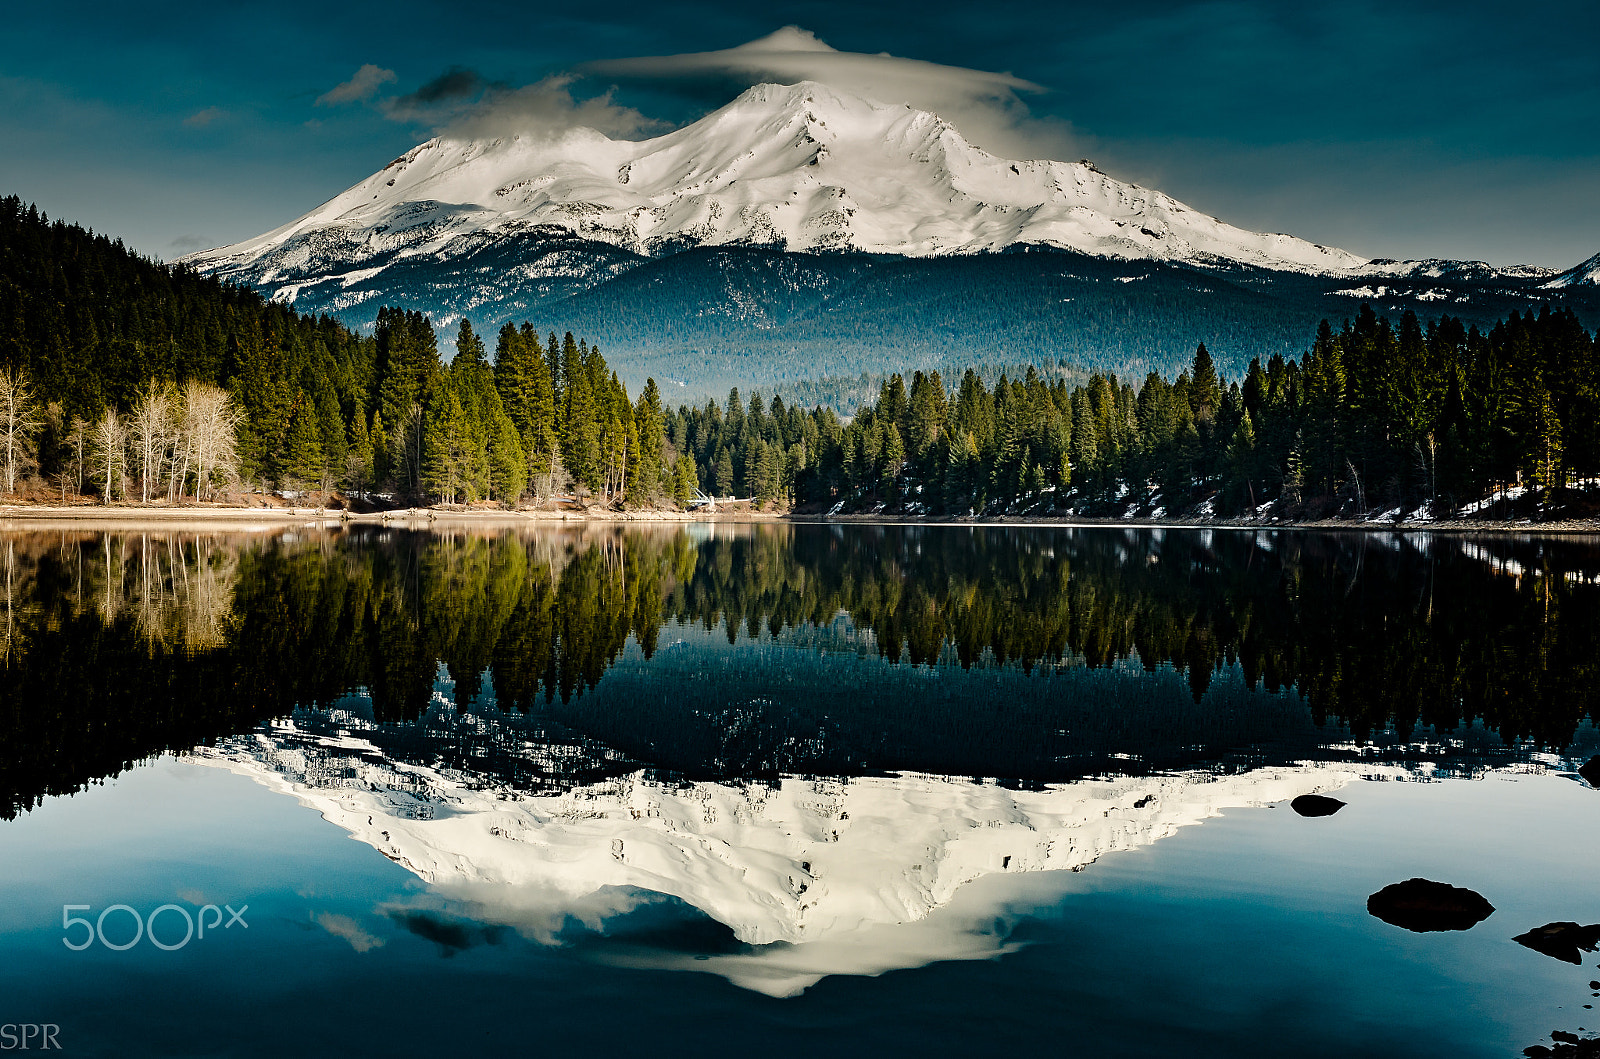 Nikon D7000 + Nikon AF-S Nikkor 35mm F1.4G sample photo. Mount shasta reflection over lake siskiyou photography